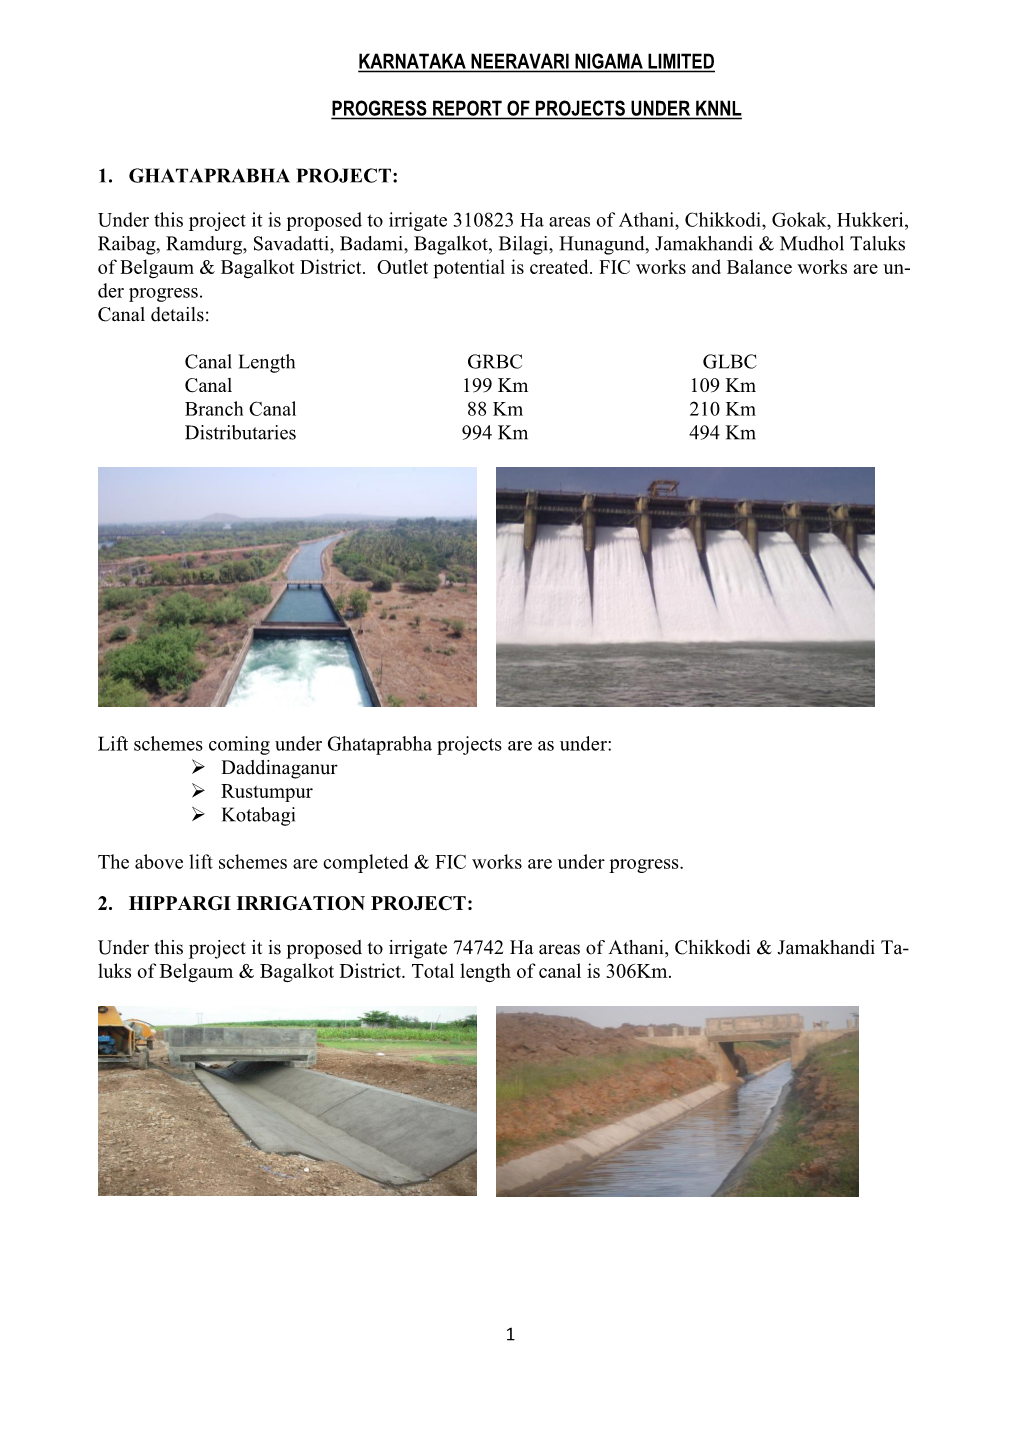 Karnataka Neeravari Nigama Limited Progress Report of Projects Under Knnl